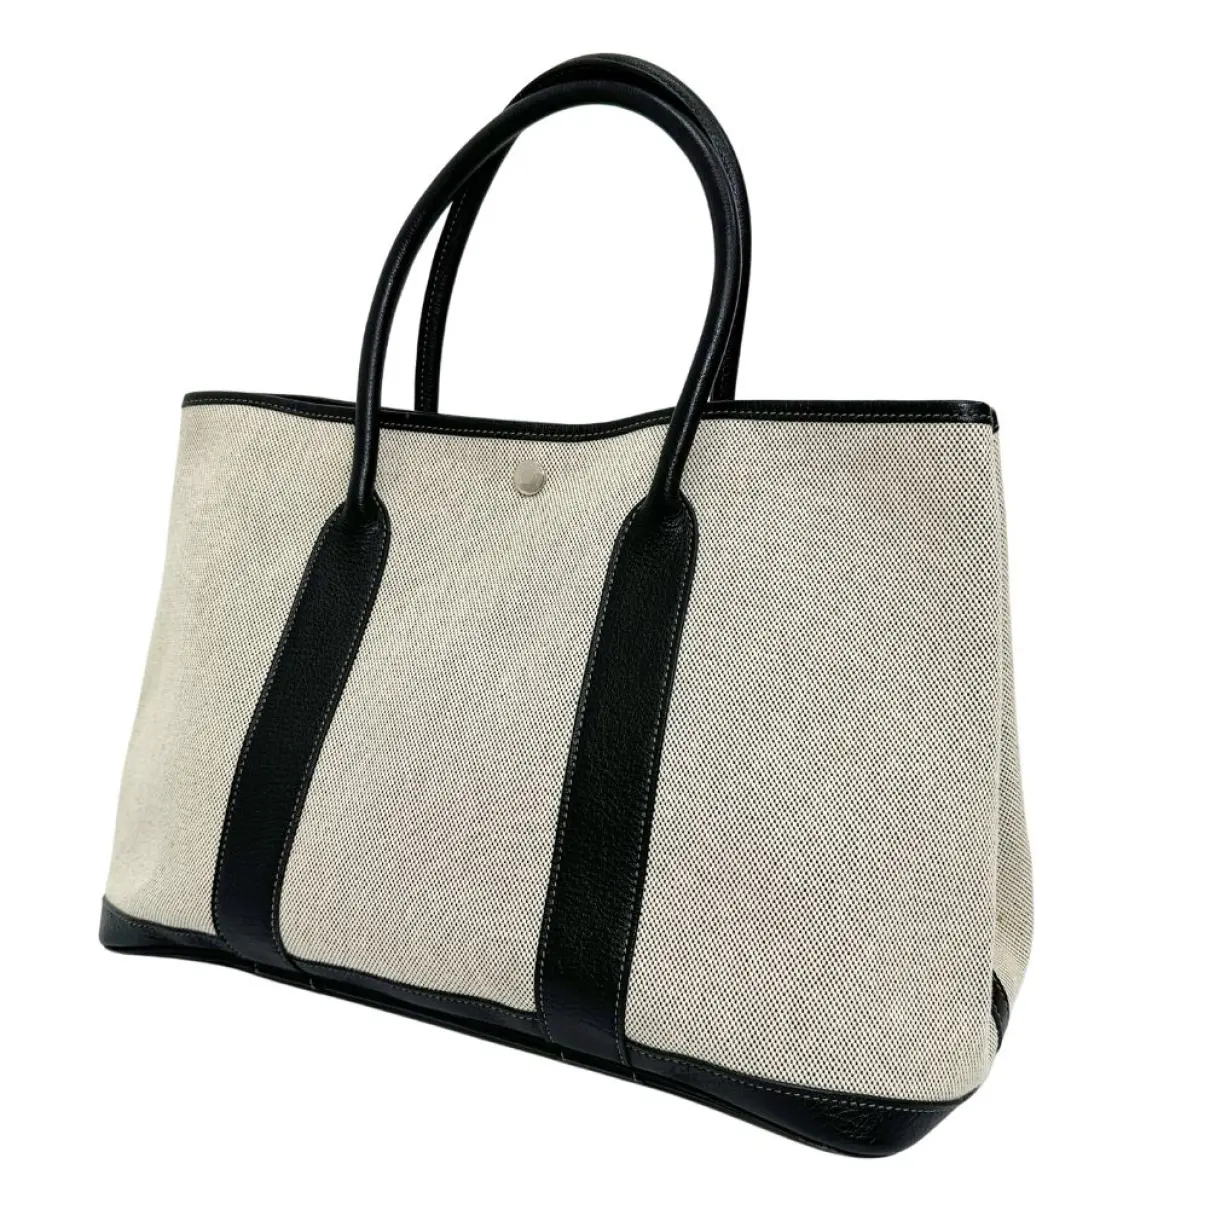 Buy Hermès Garden Party cloth handbag online